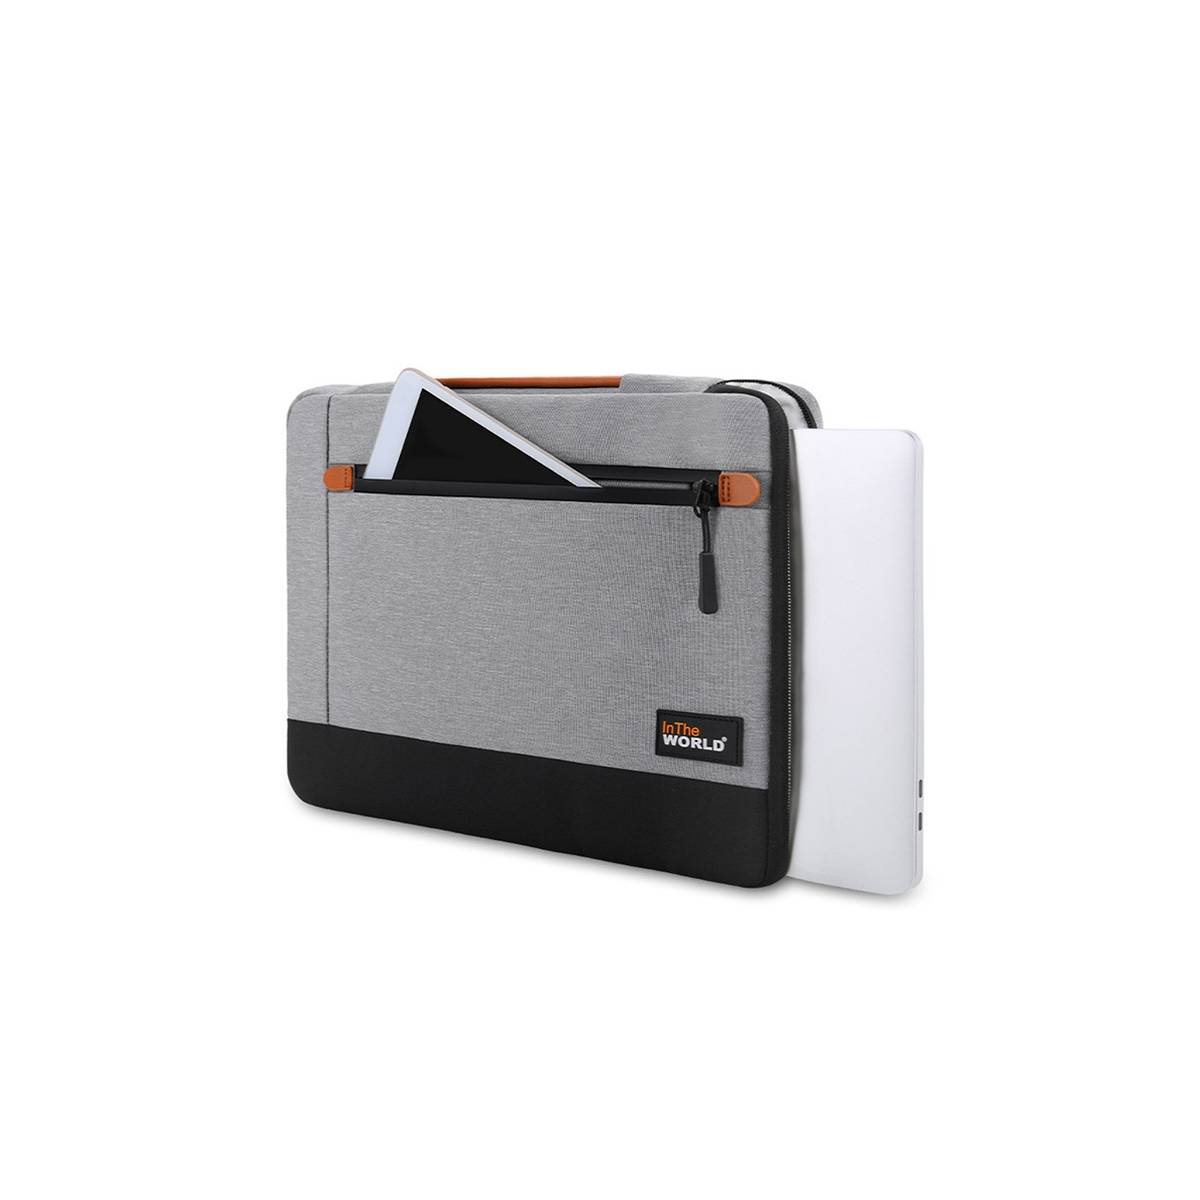 højttaler Springe spredning Ekstra beskyttende Macbook 13" taske med plys foring - Grå/Sort